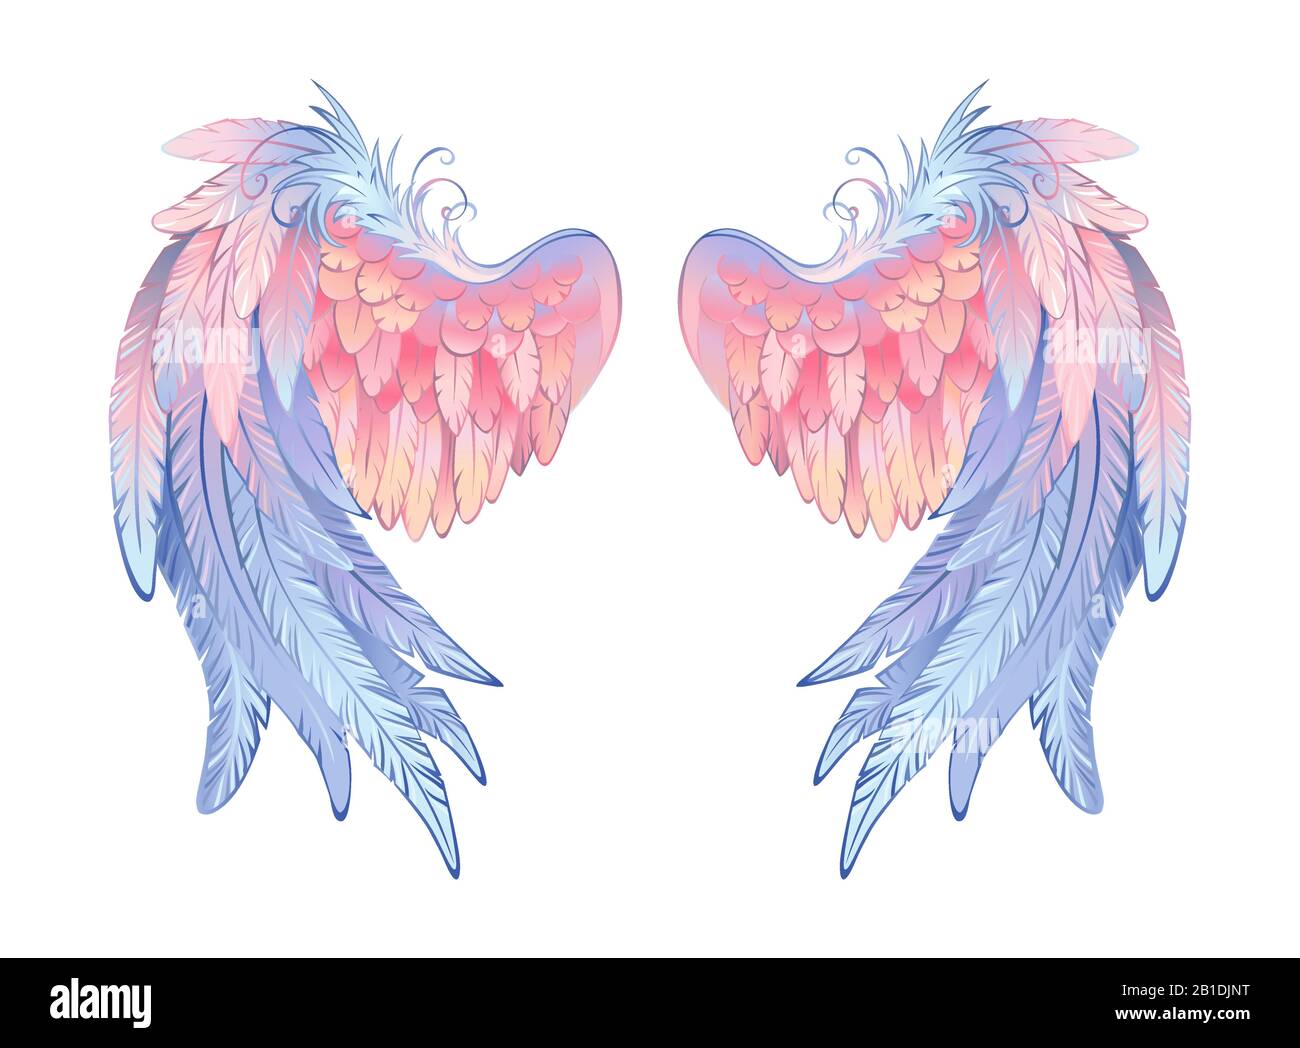 Ali d'angelo artisticamente disegnate, delicate rosa e blu su sfondo bianco. Ali angeliche. Illustrazione Vettoriale